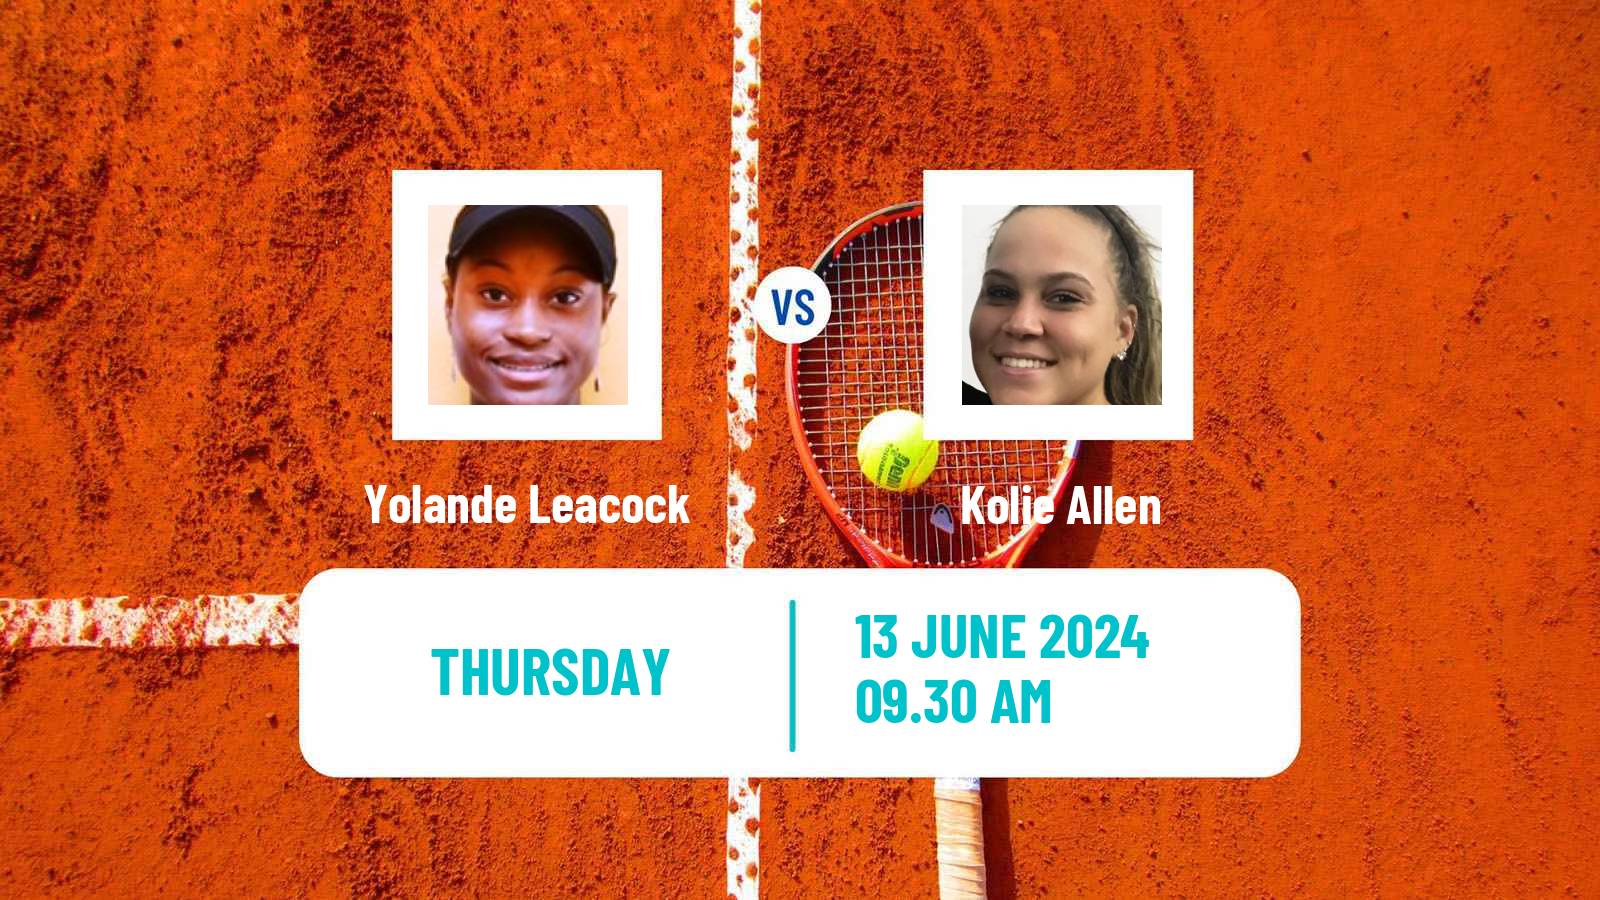 Tennis ITF W15 Santo Domingo 2 Women Yolande Leacock - Kolie Allen